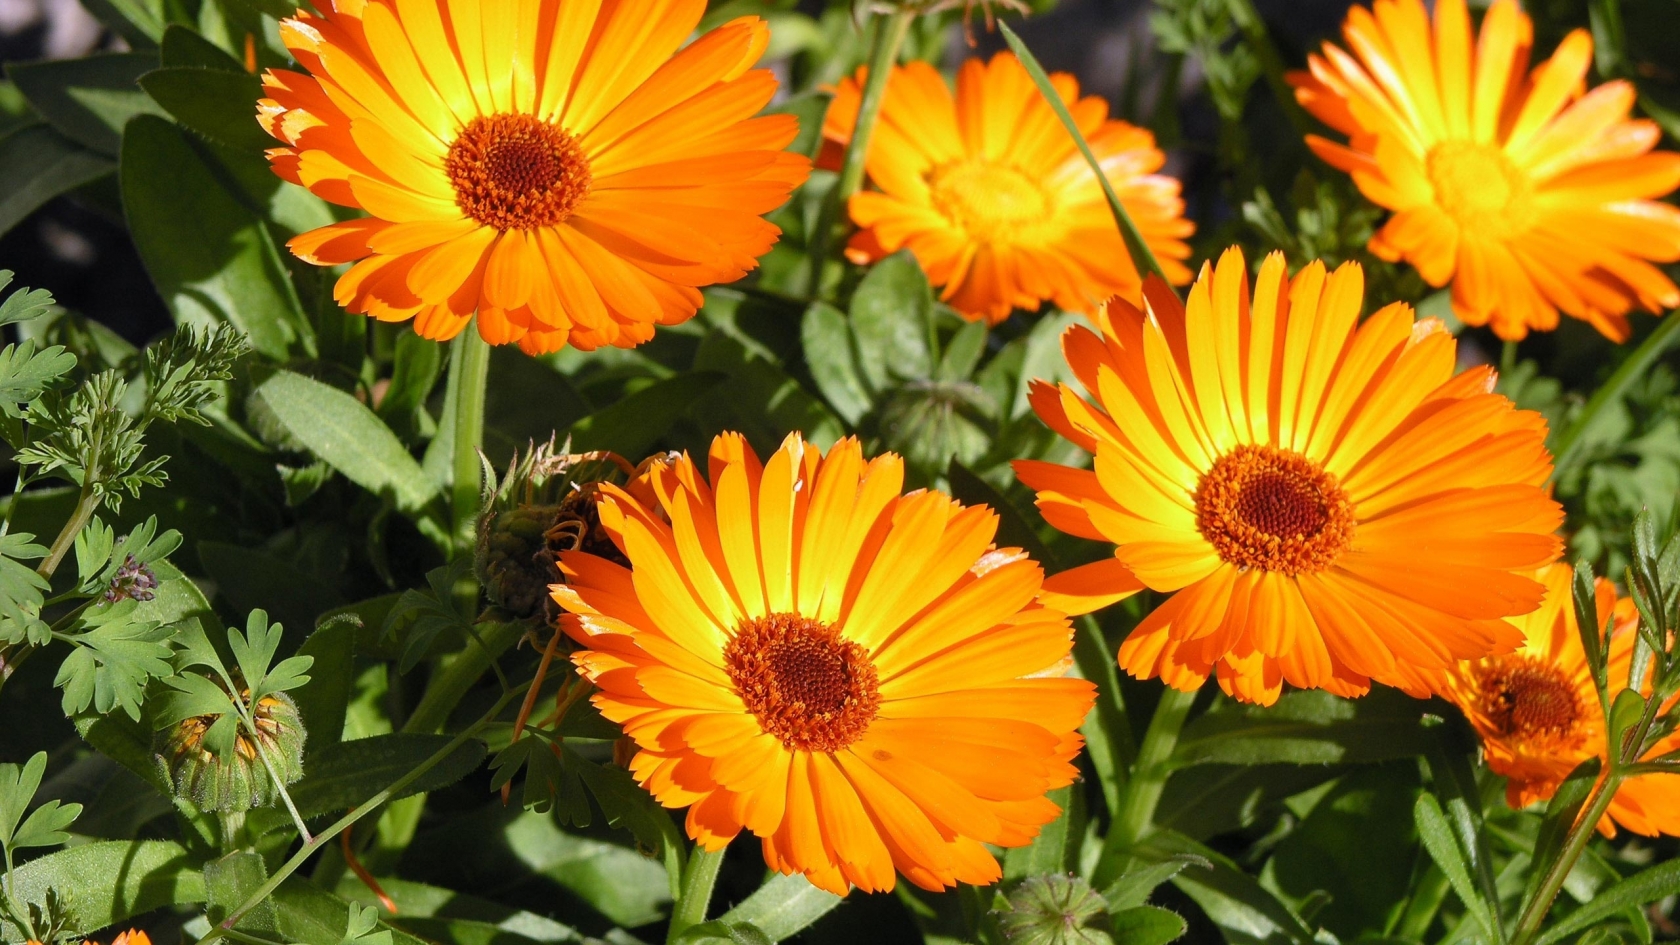 Sunbathing Flower for 1680 x 945 HDTV resolution